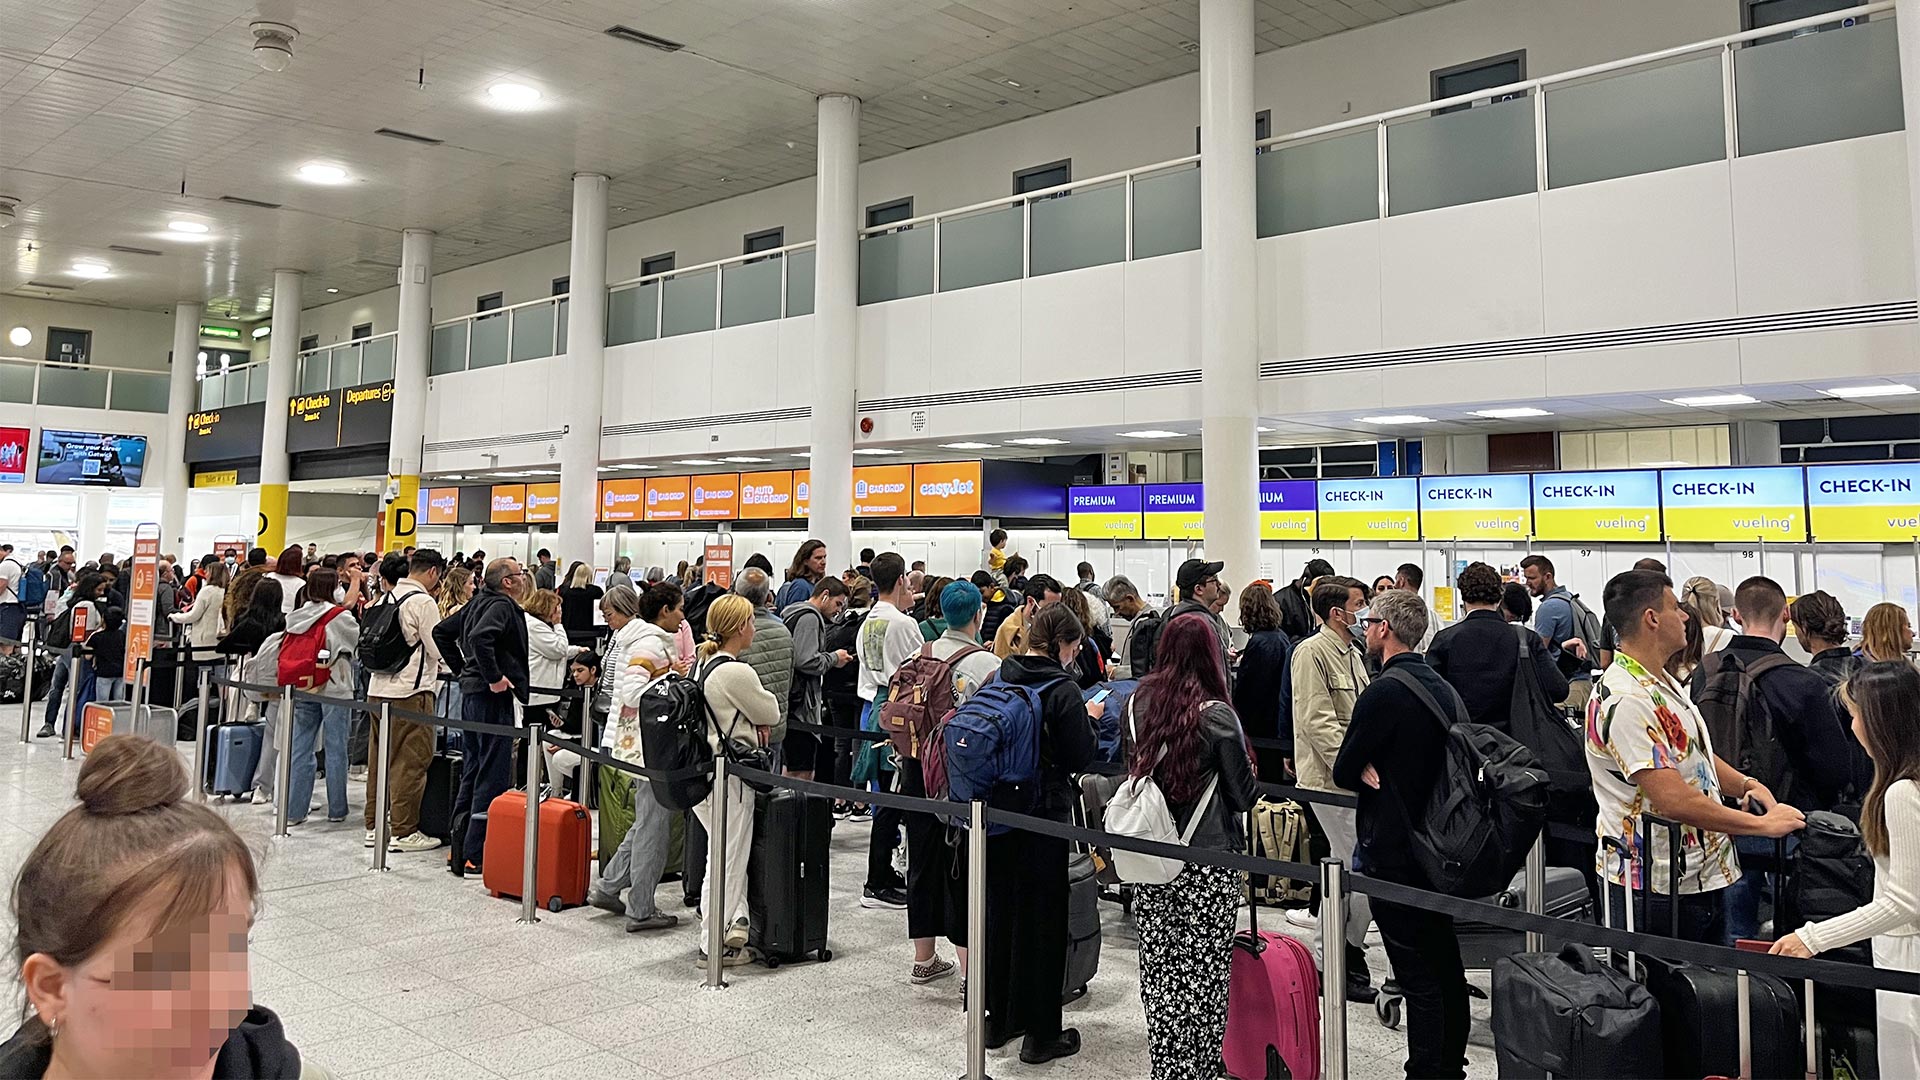 Passagiere stehen in Warteschlangen am Flughafen Gatwick  | picture alliance/dpa/PA Wire